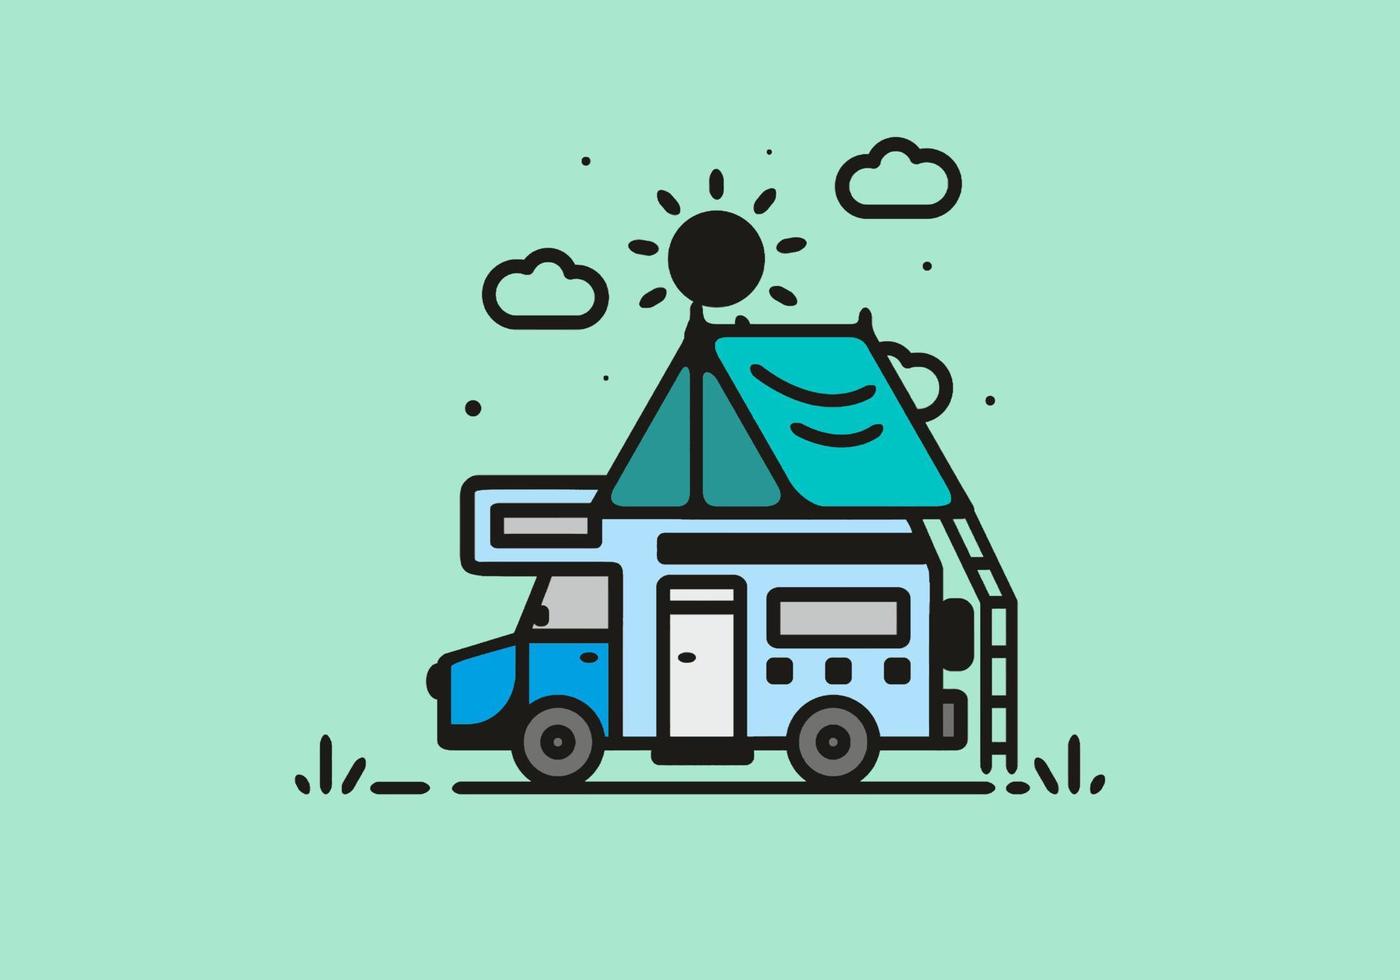 acampar con ilustración de arte de línea de autocaravana vector